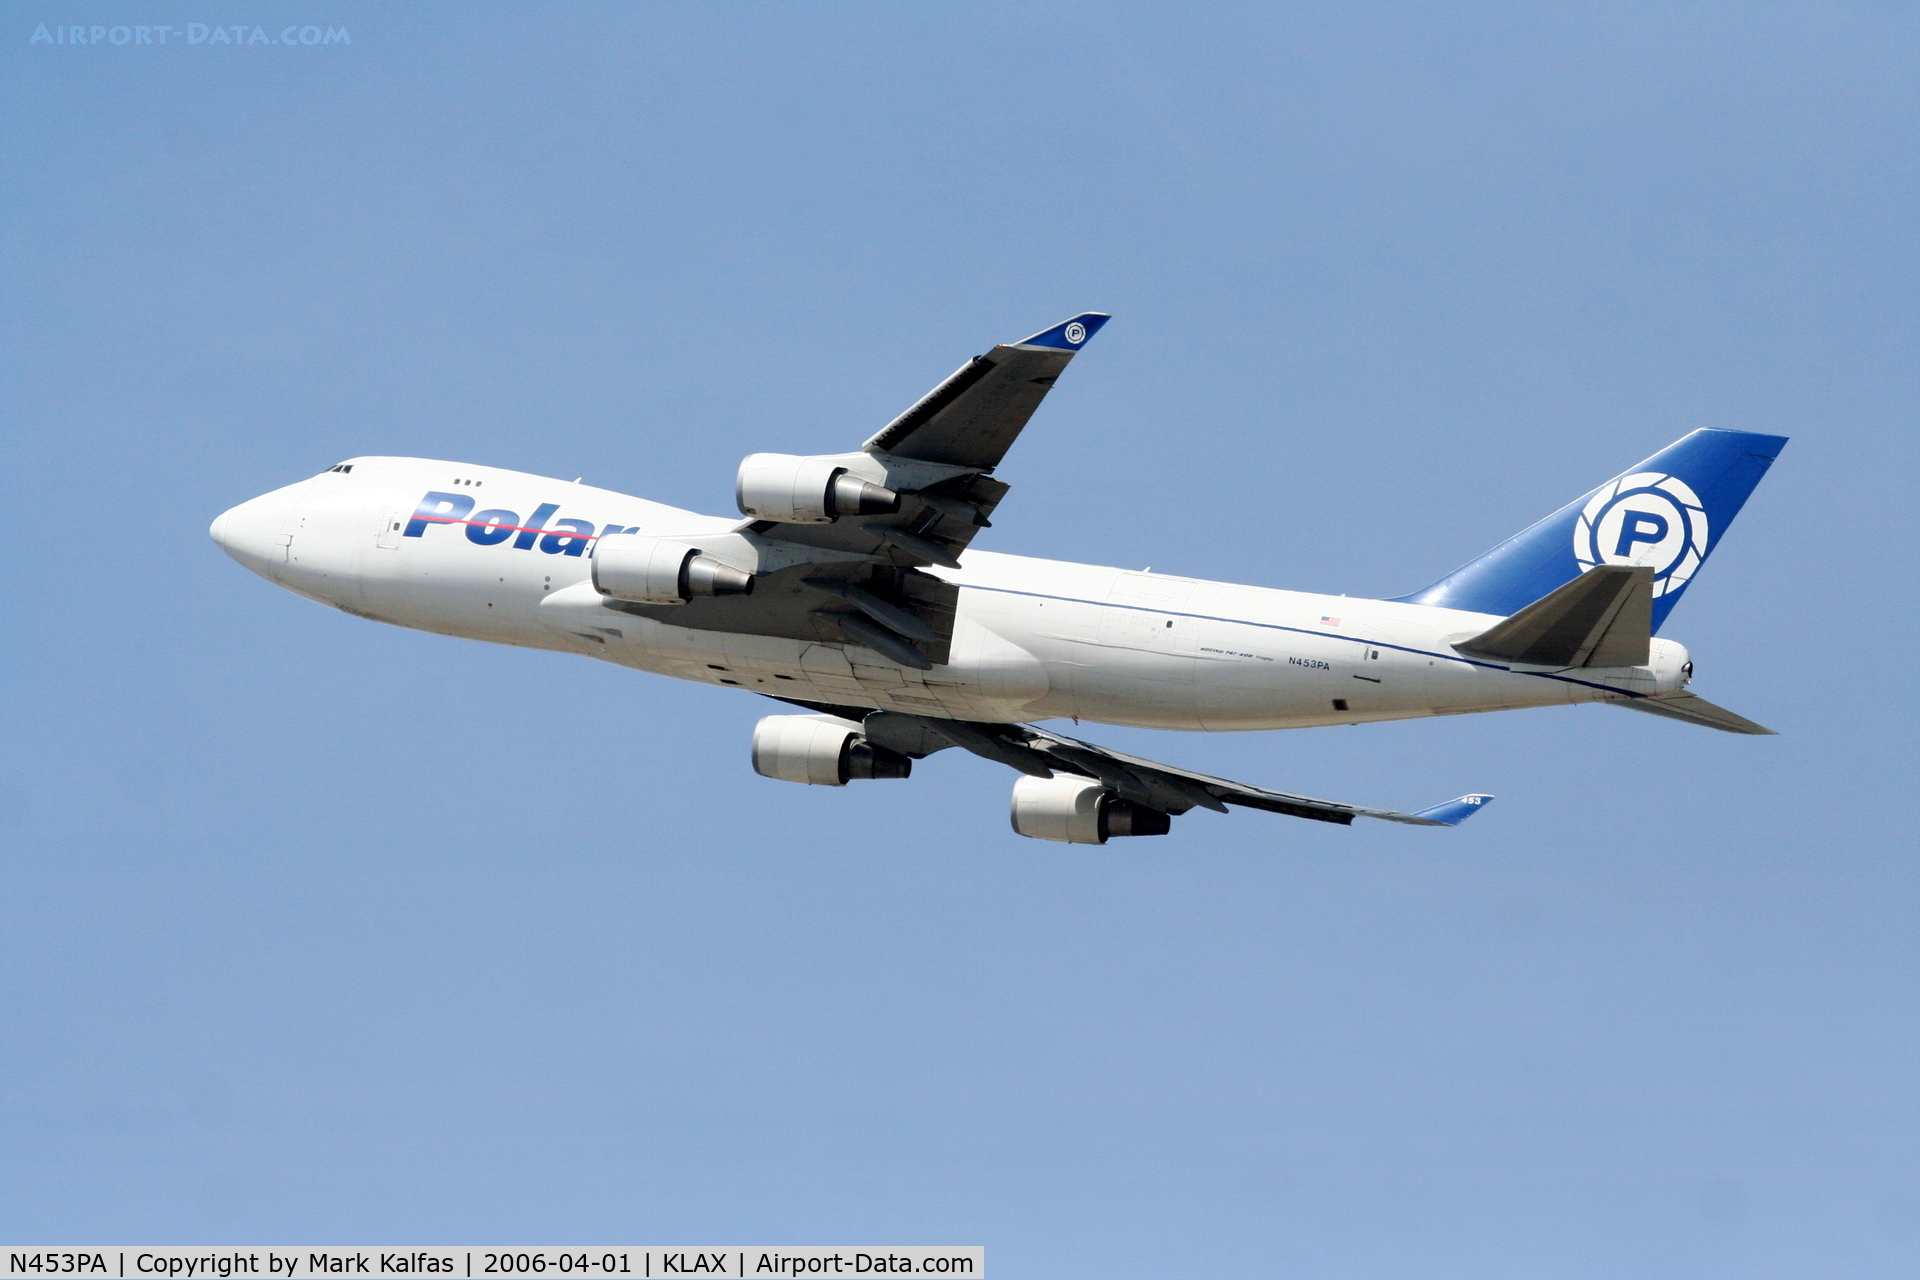 N453PA, 2001 Boeing 747-46NF C/N 30811, Polar 747-46NF Departing RWY 25L KLAX